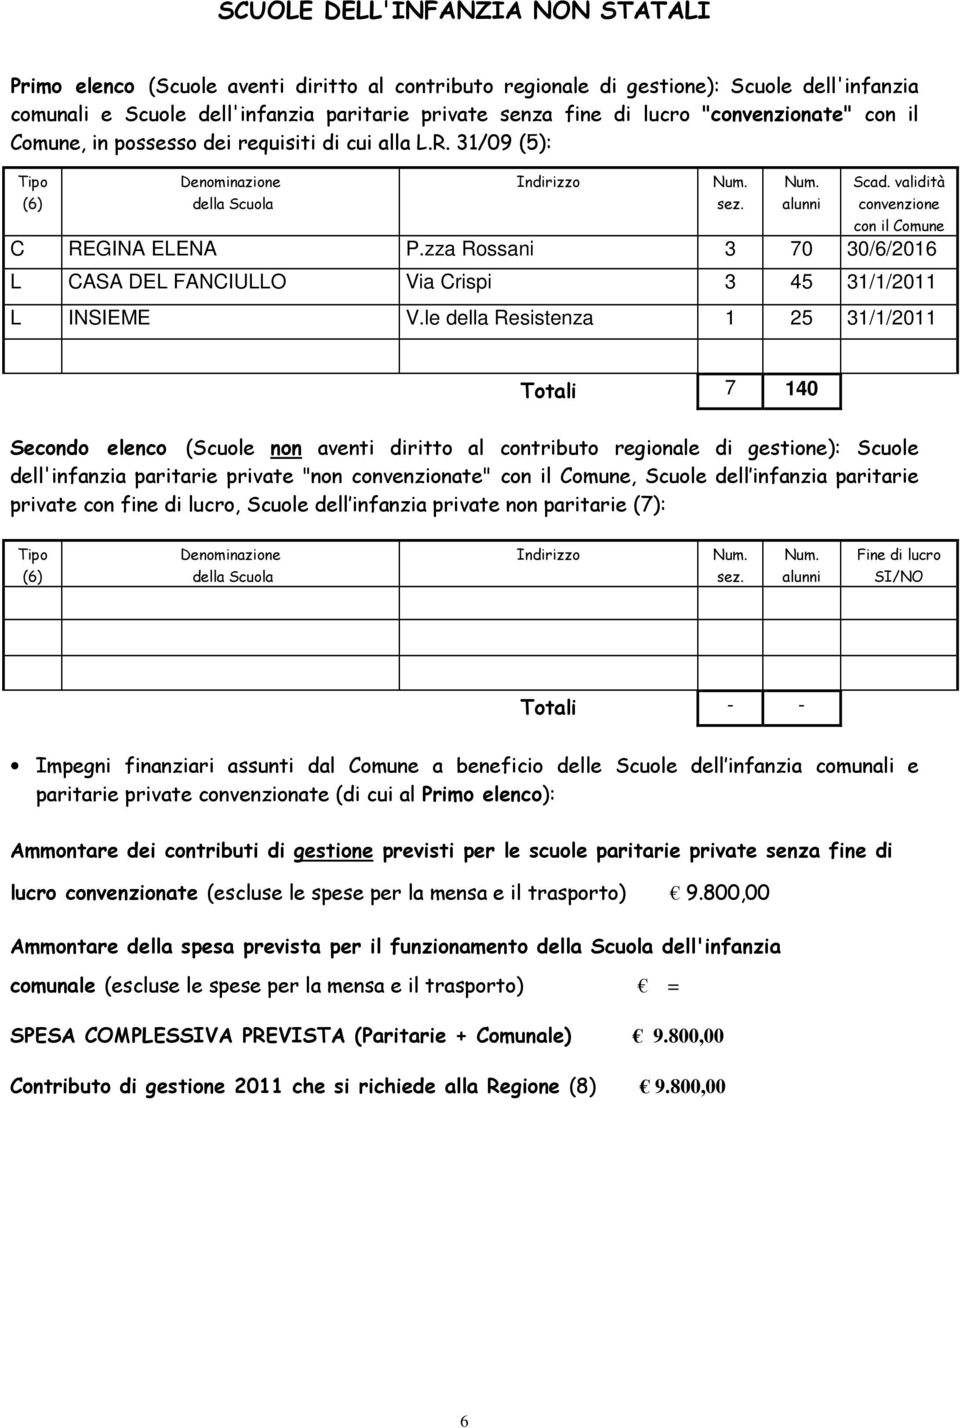 validità convenzione con il Comune C REGINA ELENA P.zza Rossani 3 70 30/6/2016 L CASA DEL FANCIULLO Via Crispi 3 45 31/1/2011 L INSIEME V.